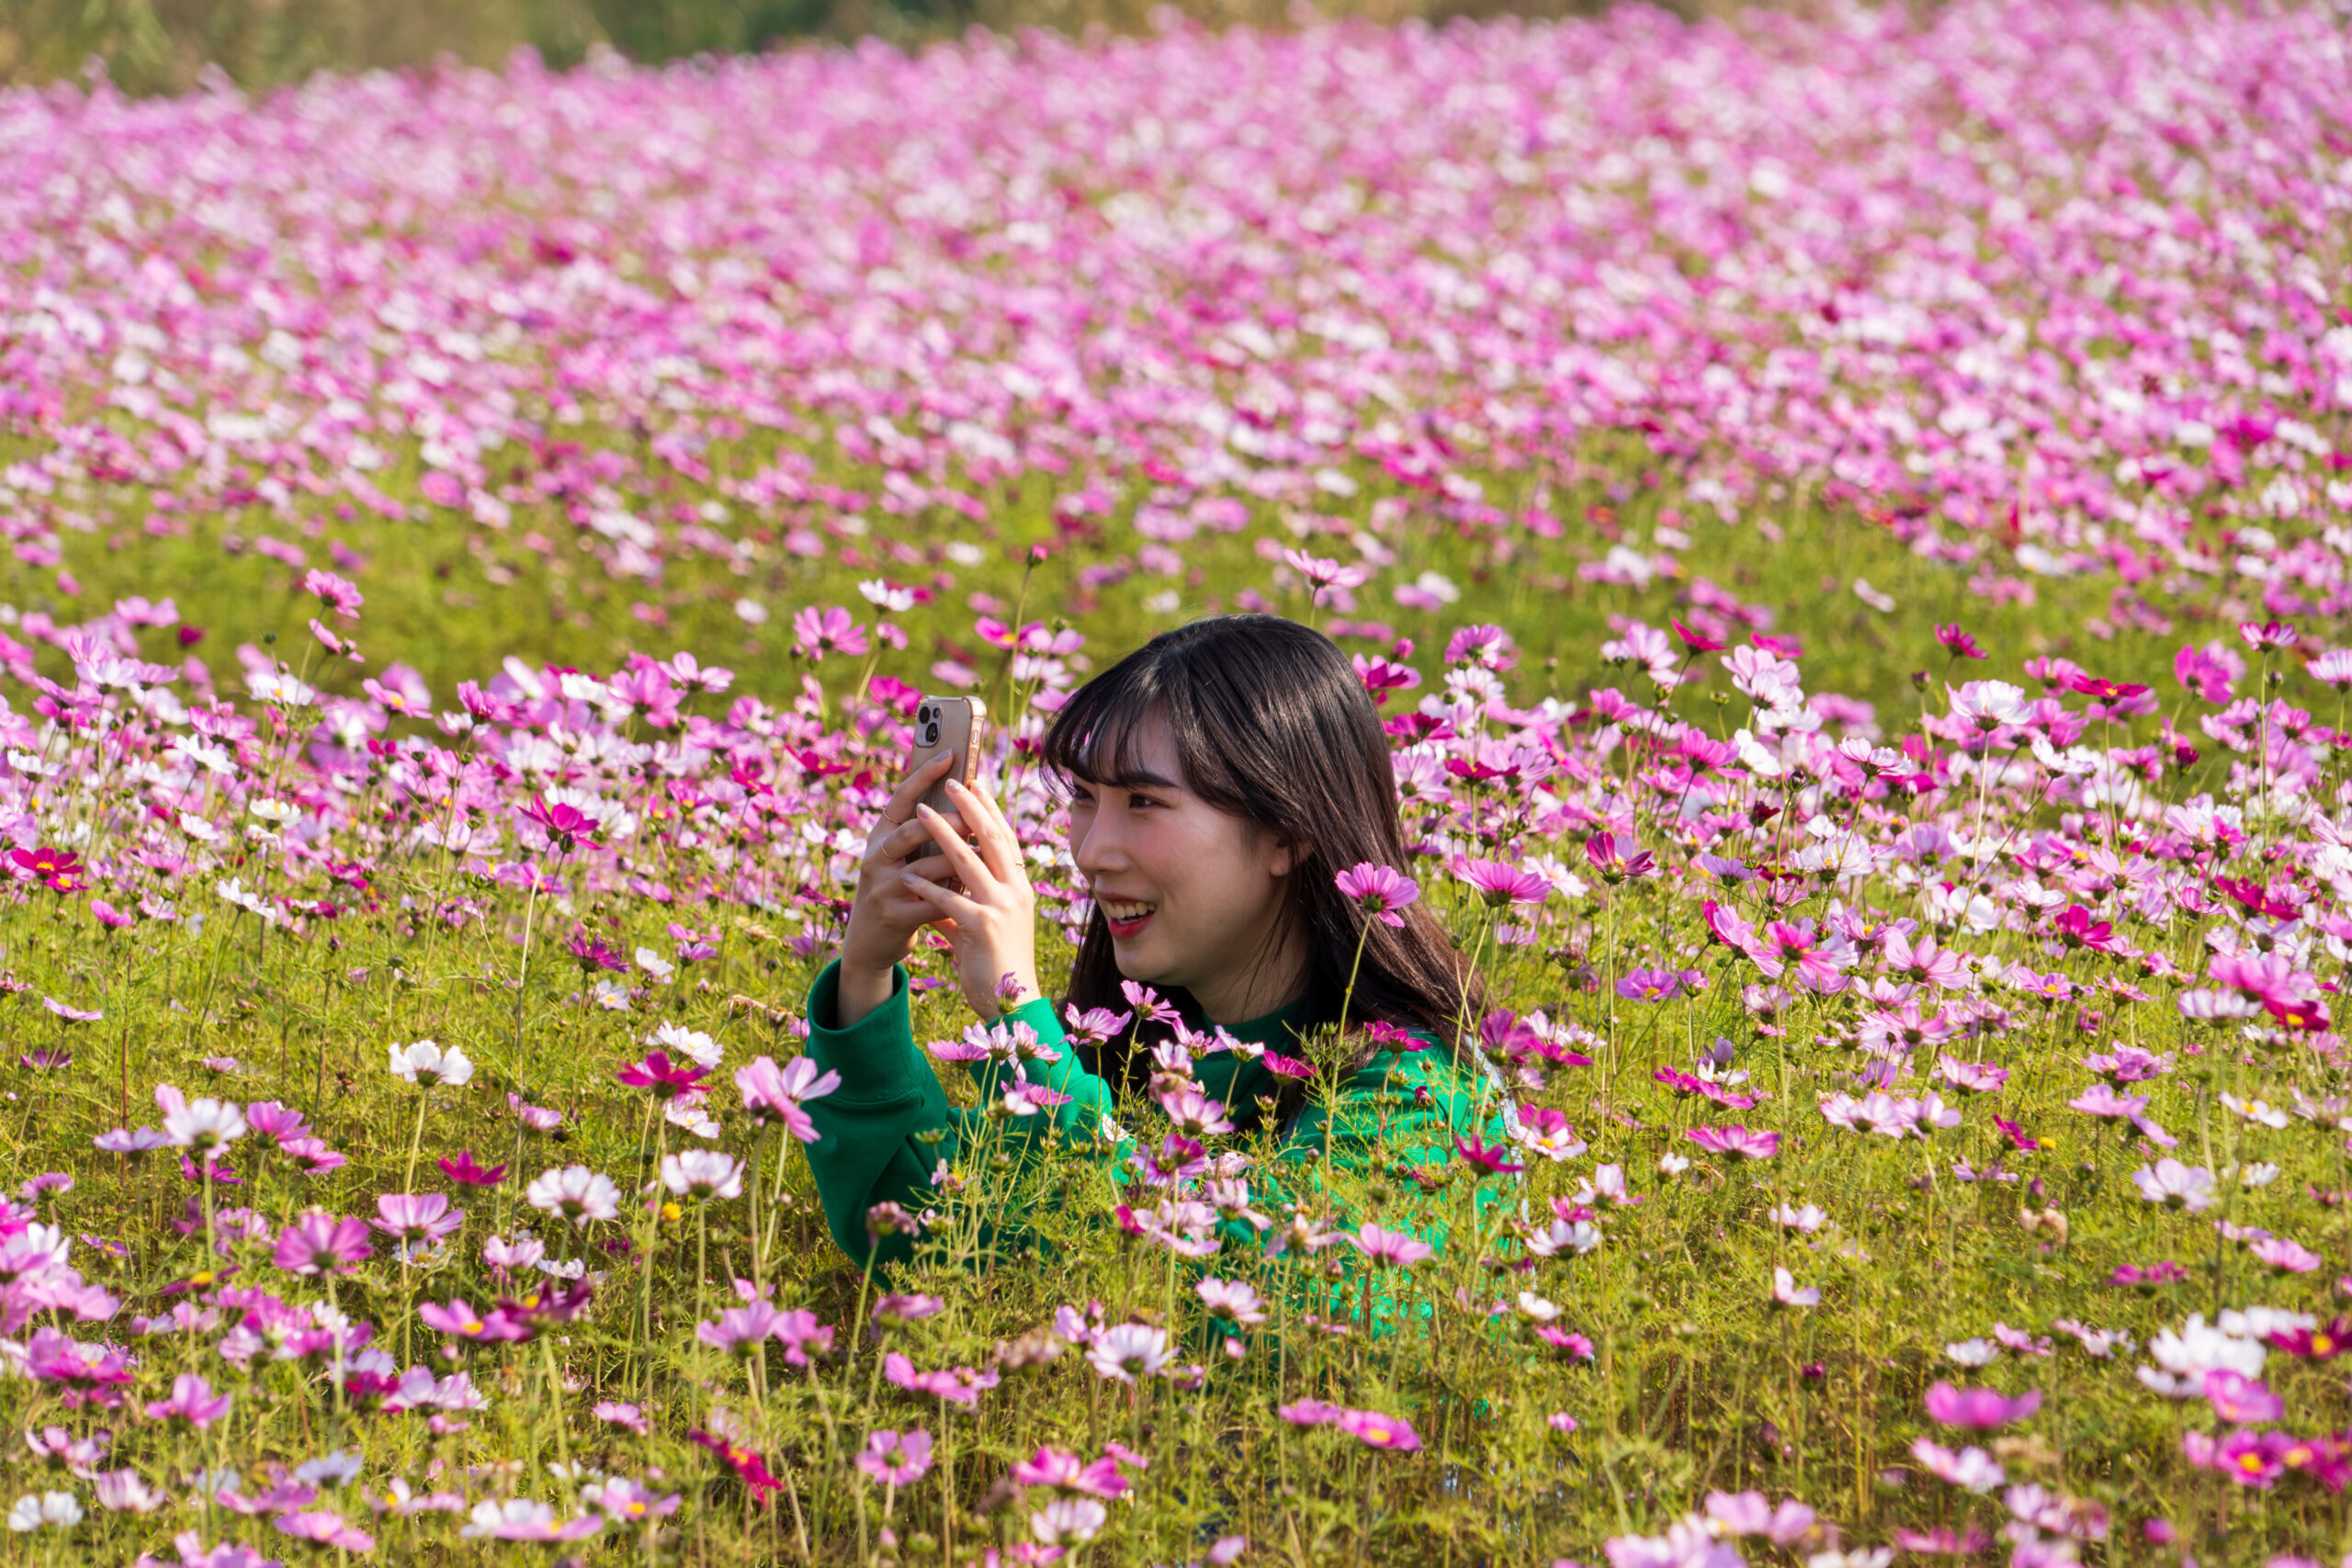 นักท่องเที่ยวเยือน 'สวนดอกคอสมอส' ในเกาหลีใต้